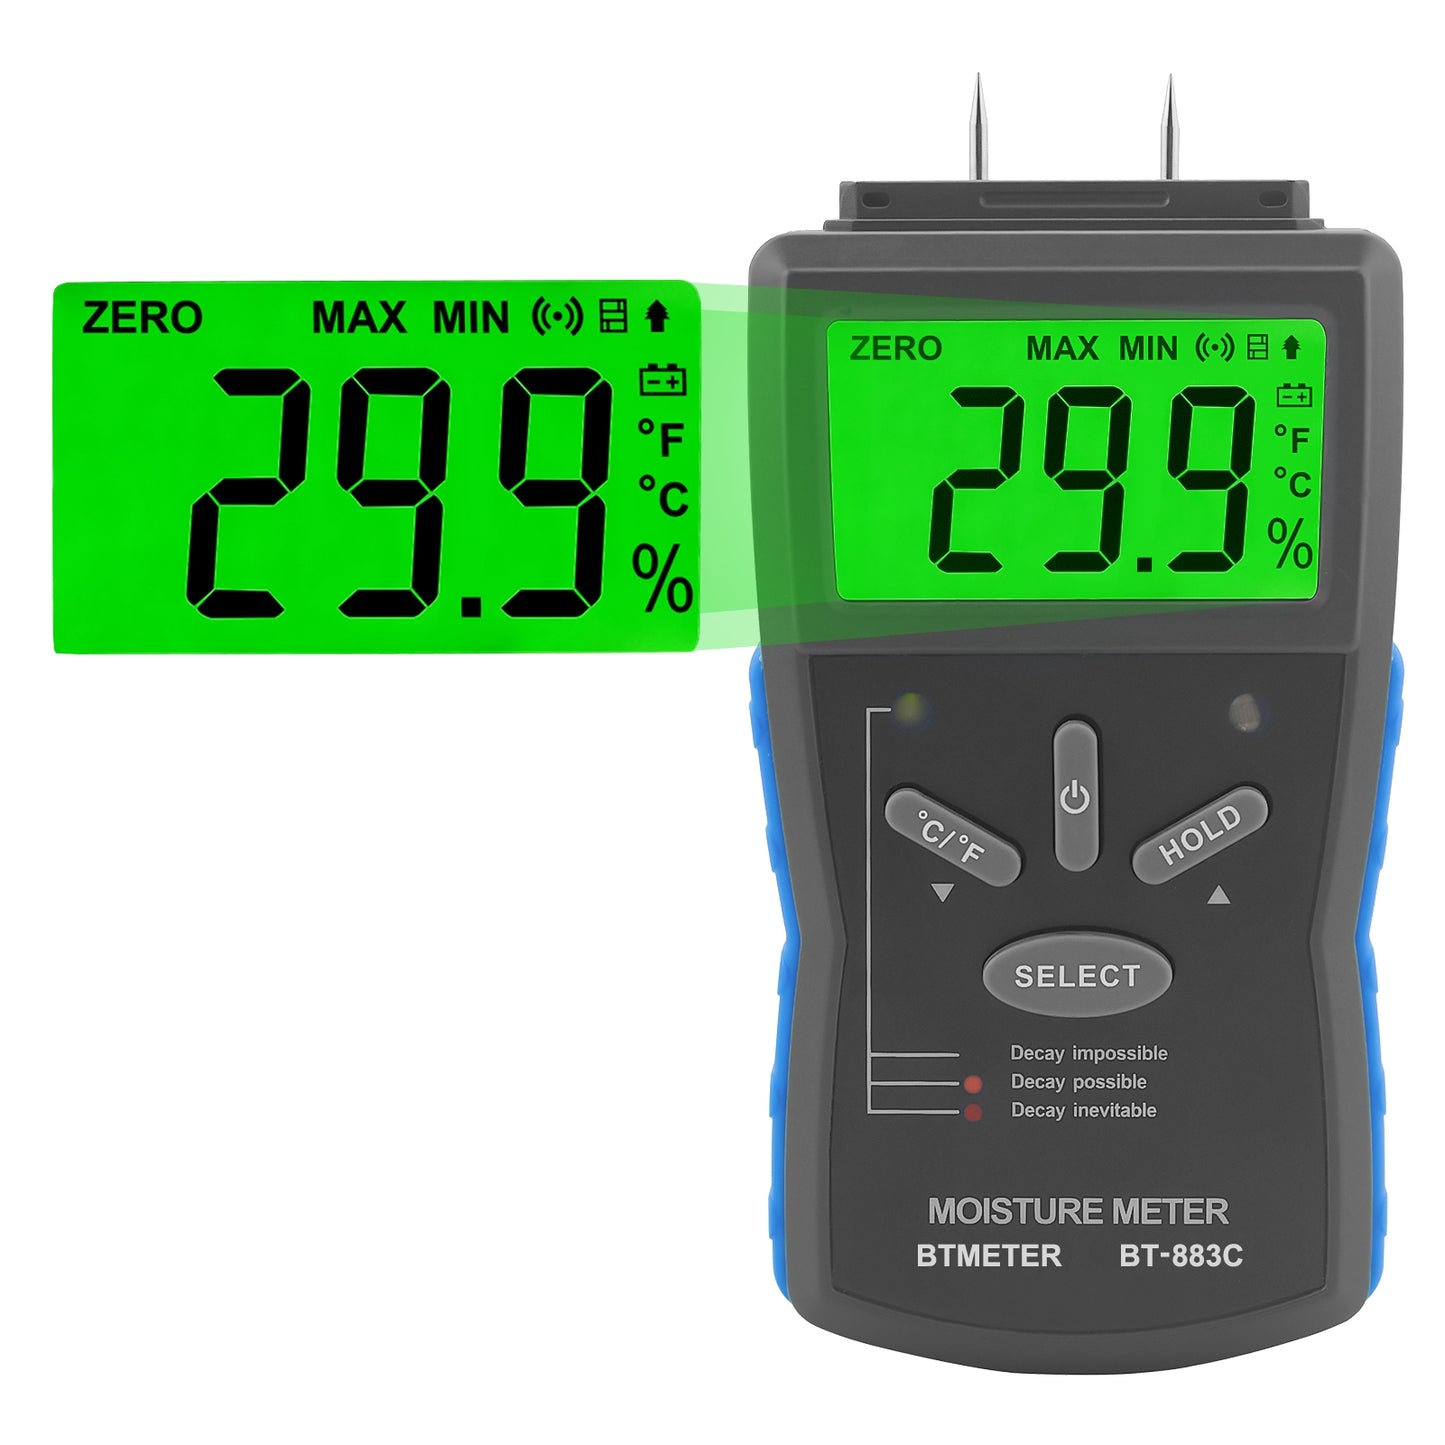 BTMETER BT-883C Humidity Meter Moisture Meter LCD Digital Humidity Tester - btmeter-store